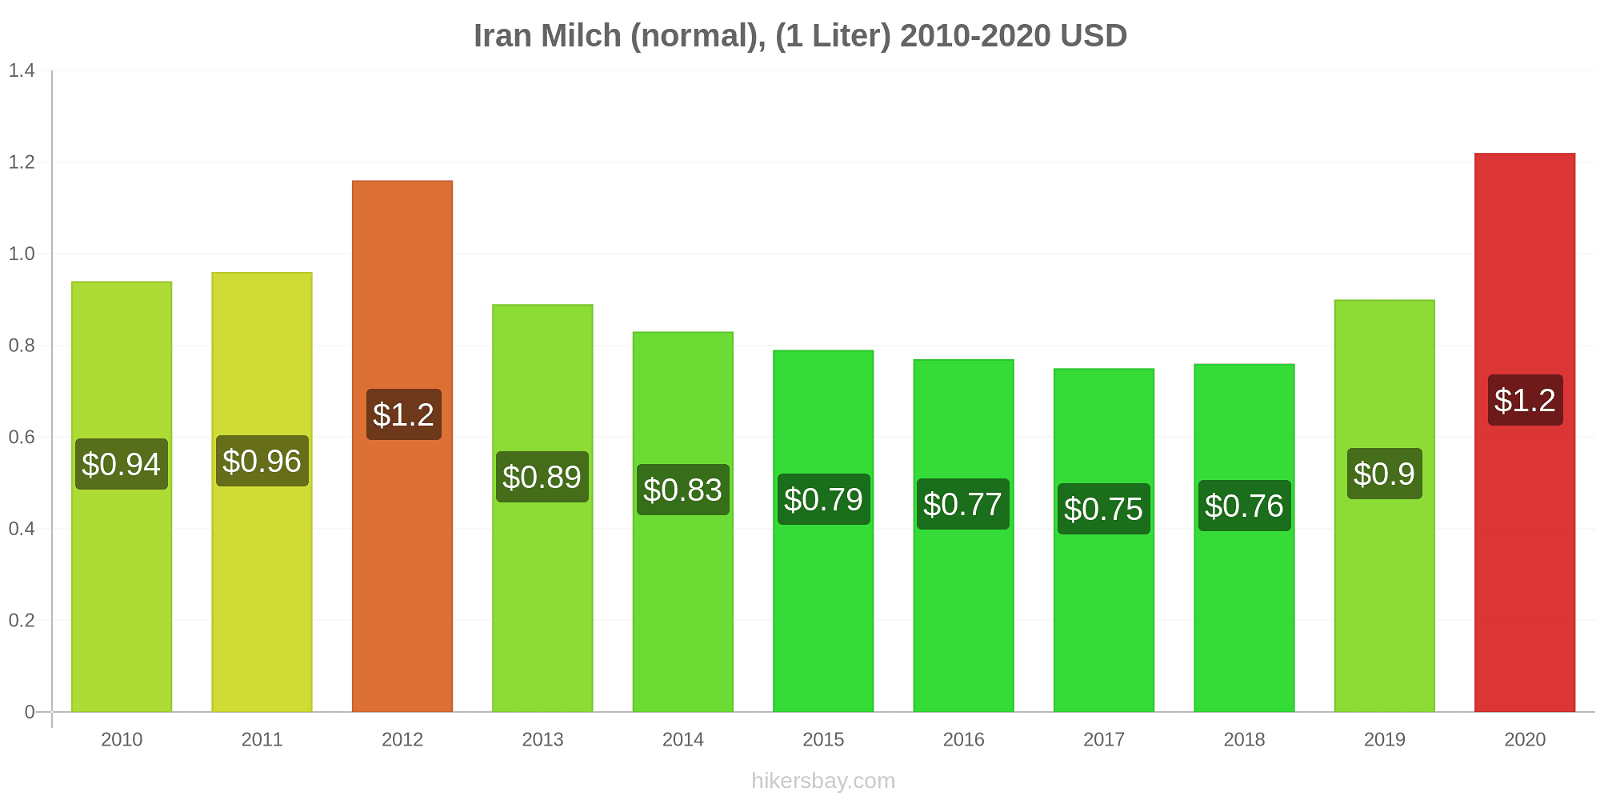 Iran Preisänderungen (Regulär), Milch (1 Liter) hikersbay.com